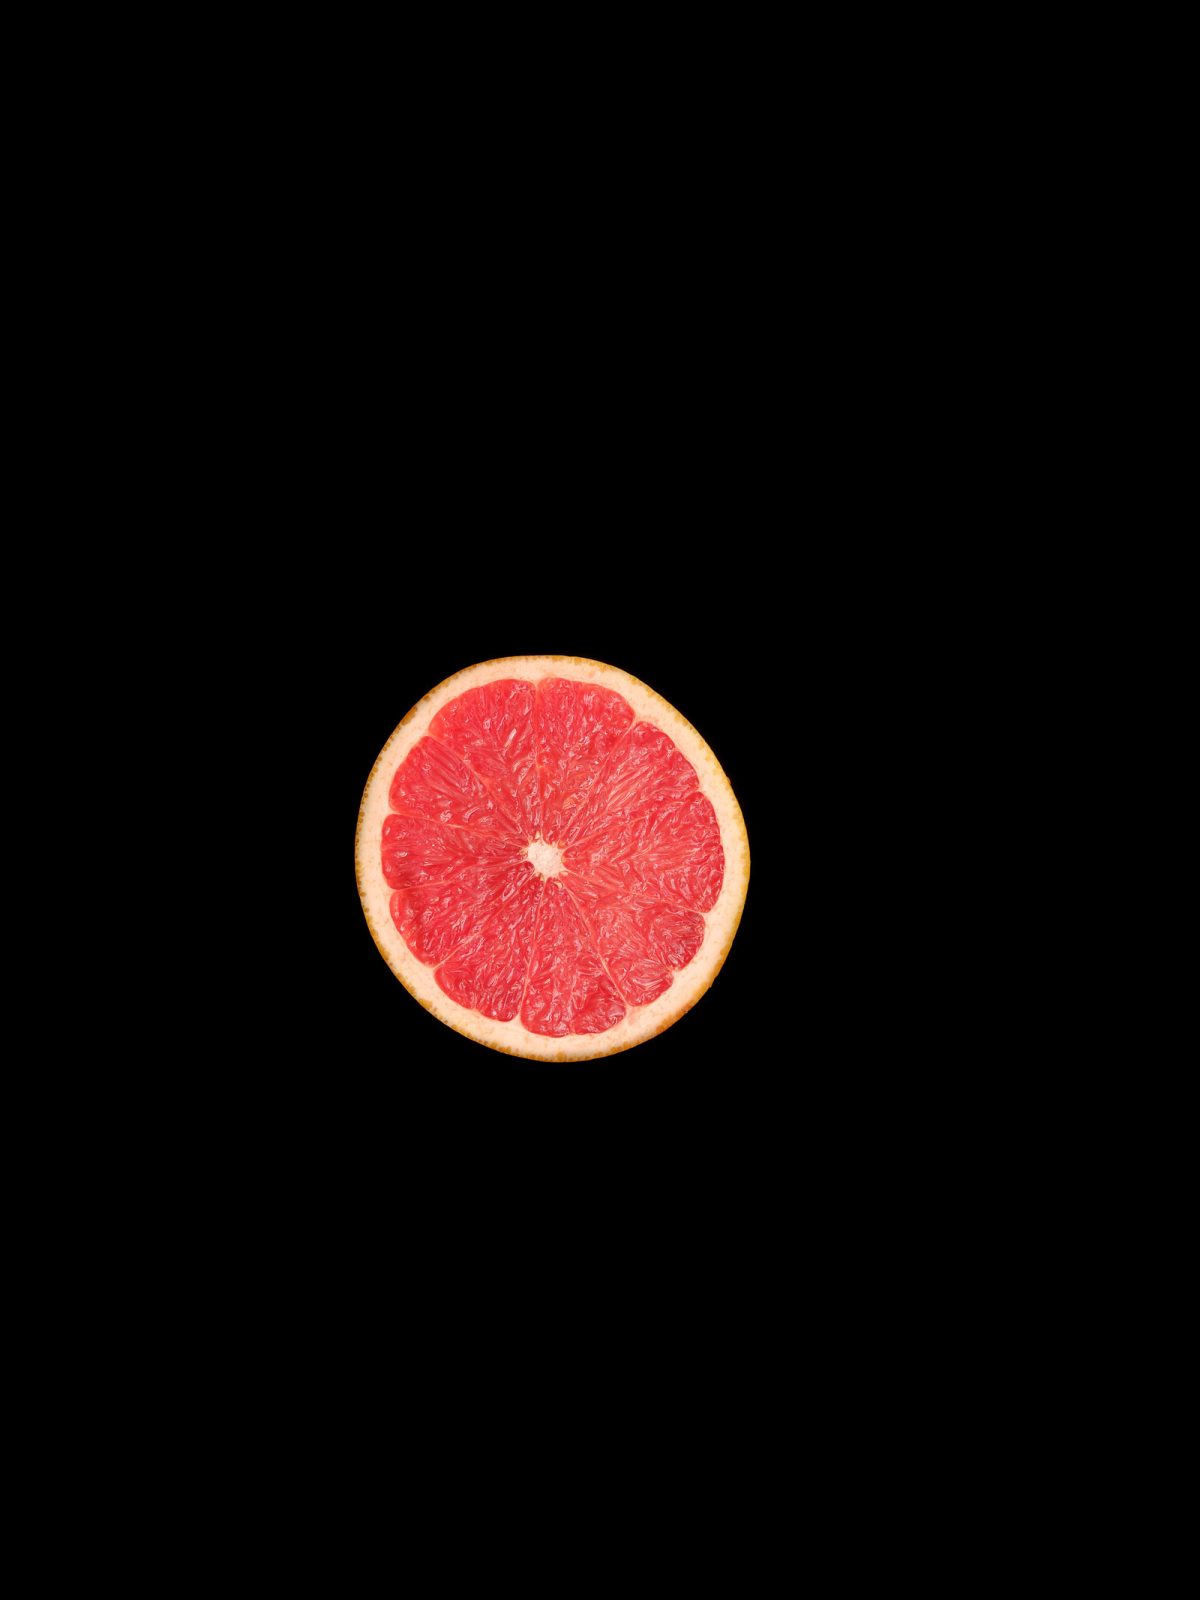 Grapefruit - modernes Stillleben limitiertes Foto Kunst von Thomas Sixt